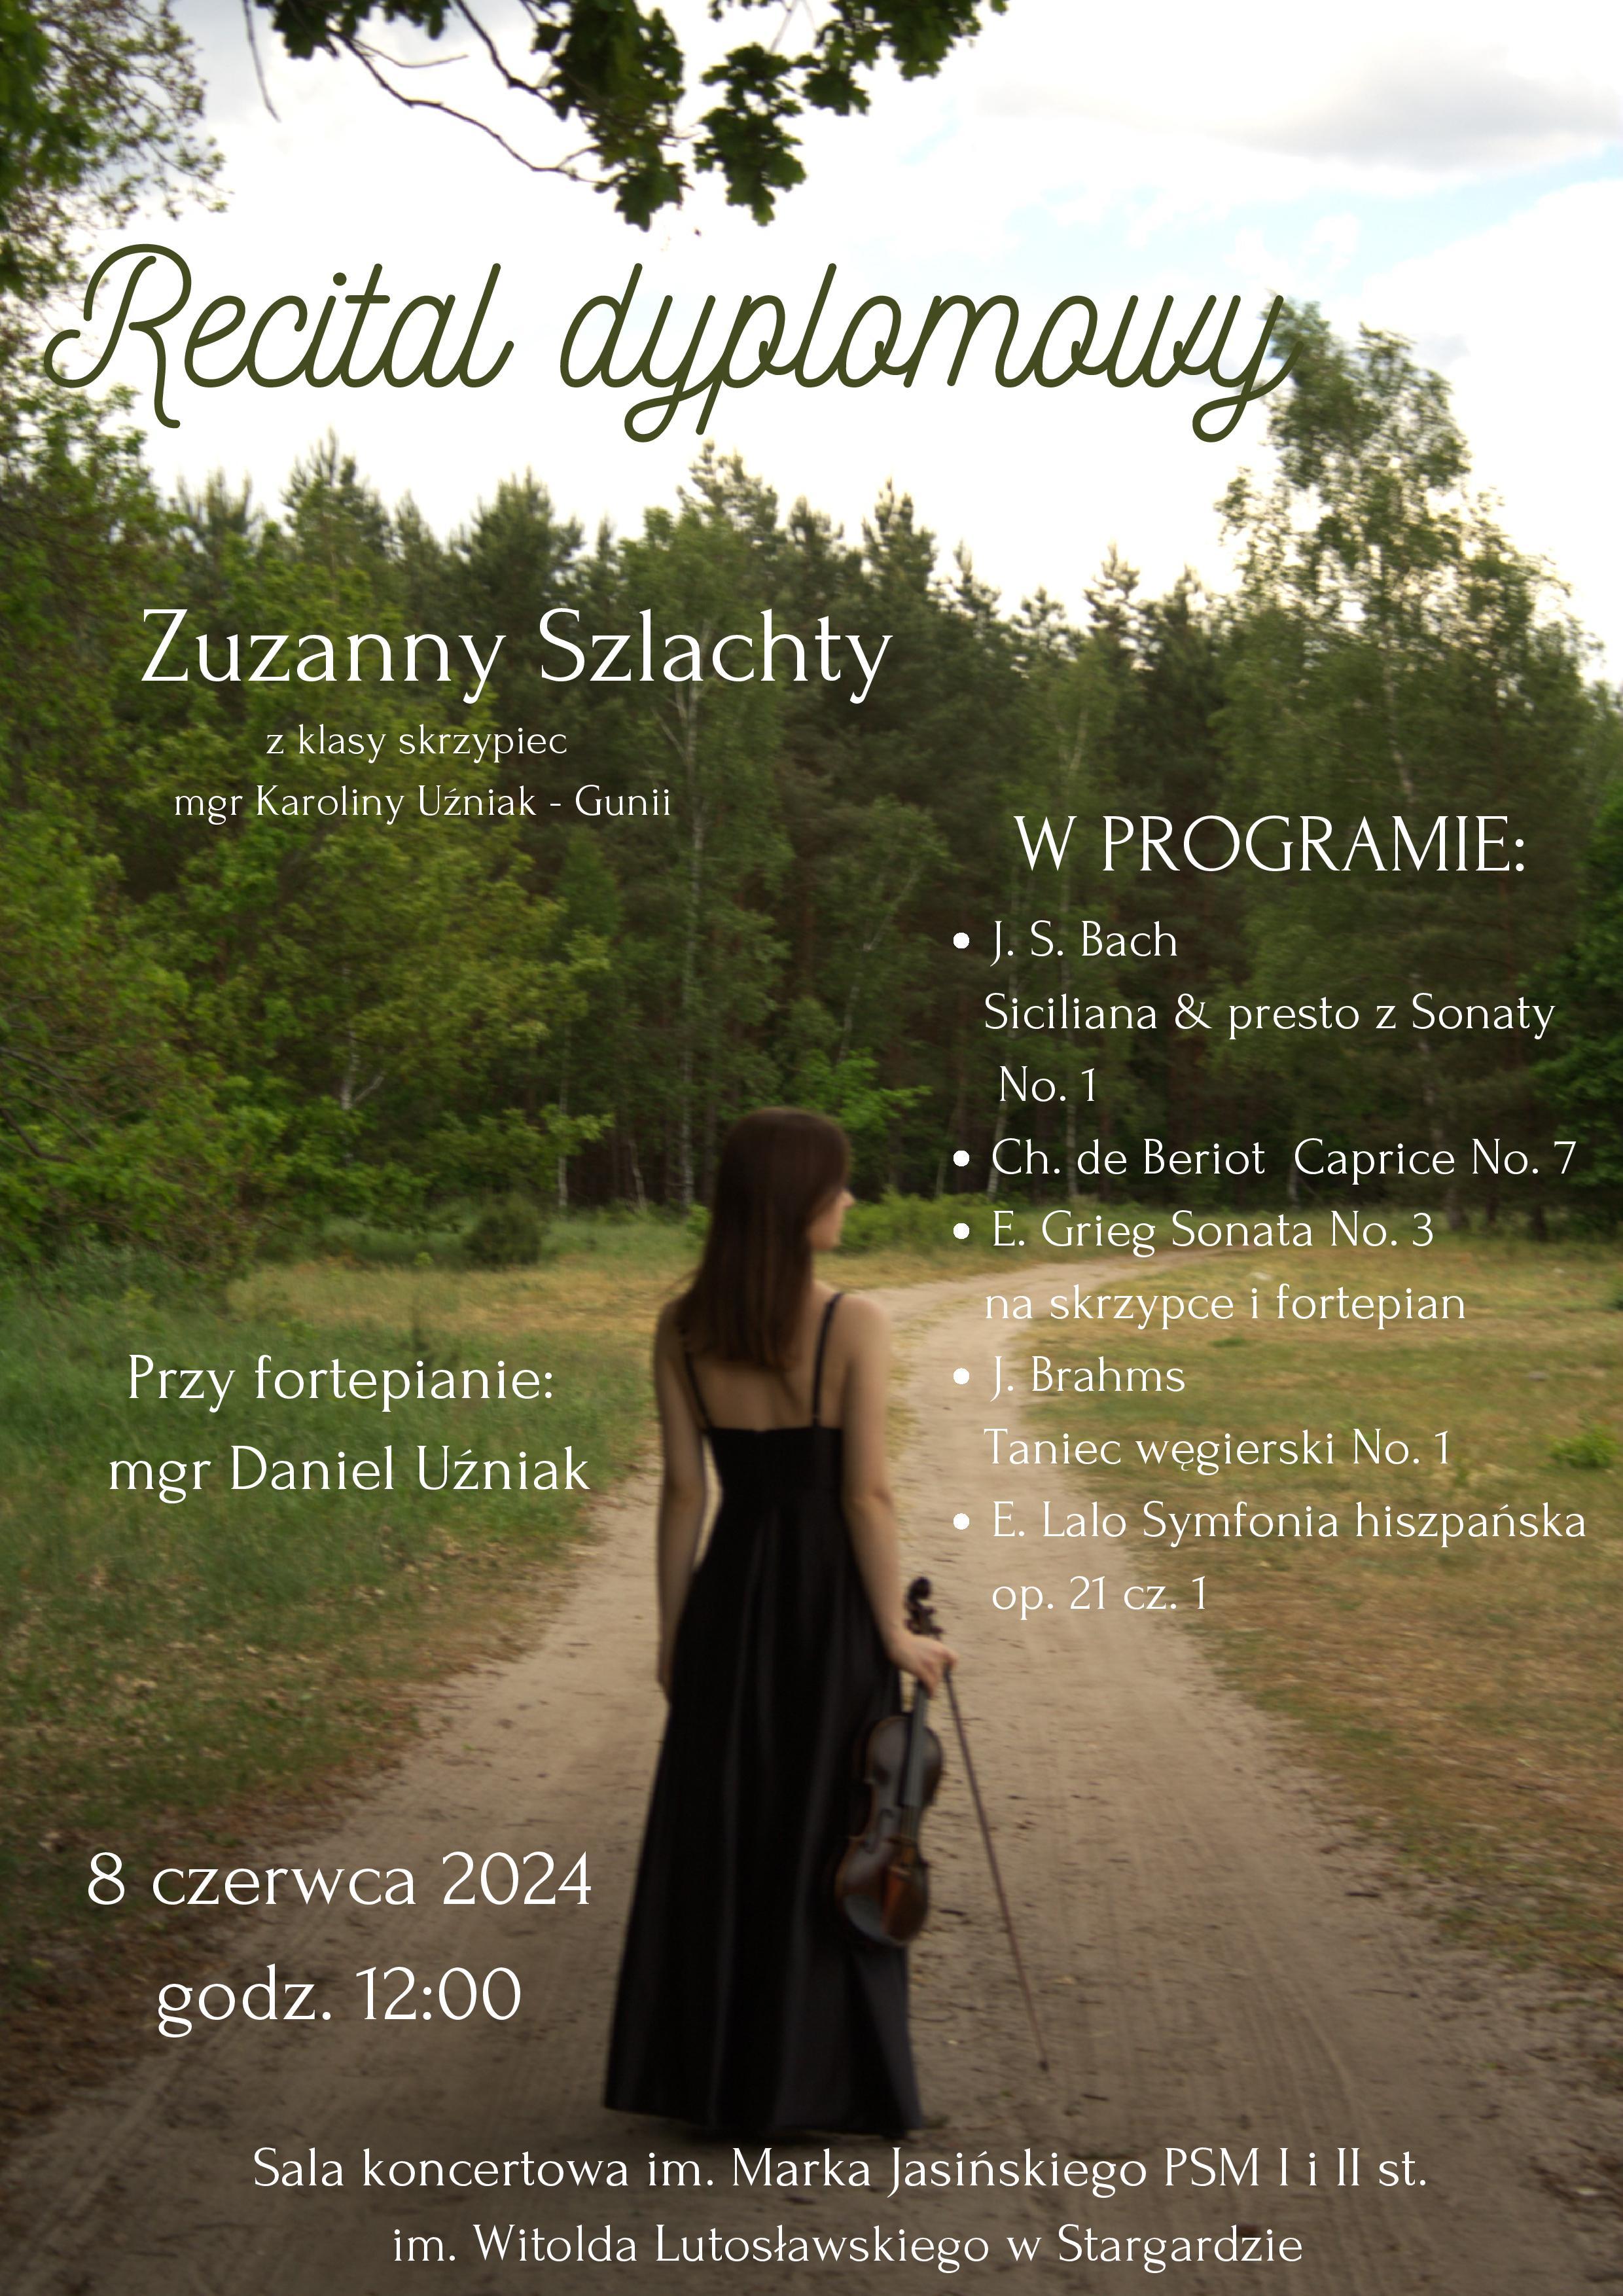 Plakat informujący o recitalu dyplomowym Zuzanny Szlachty w dniu 8 czerwca 2024 o godzinie 12.00. Tło plakatu stanowi zdjęcie uczennicy stojącej tyłem na polnej drodze na tle lasu. Uczennica ubrana jest w długą czarną suknię, a w prawej ręce trzyma skrzypce i smyczek.